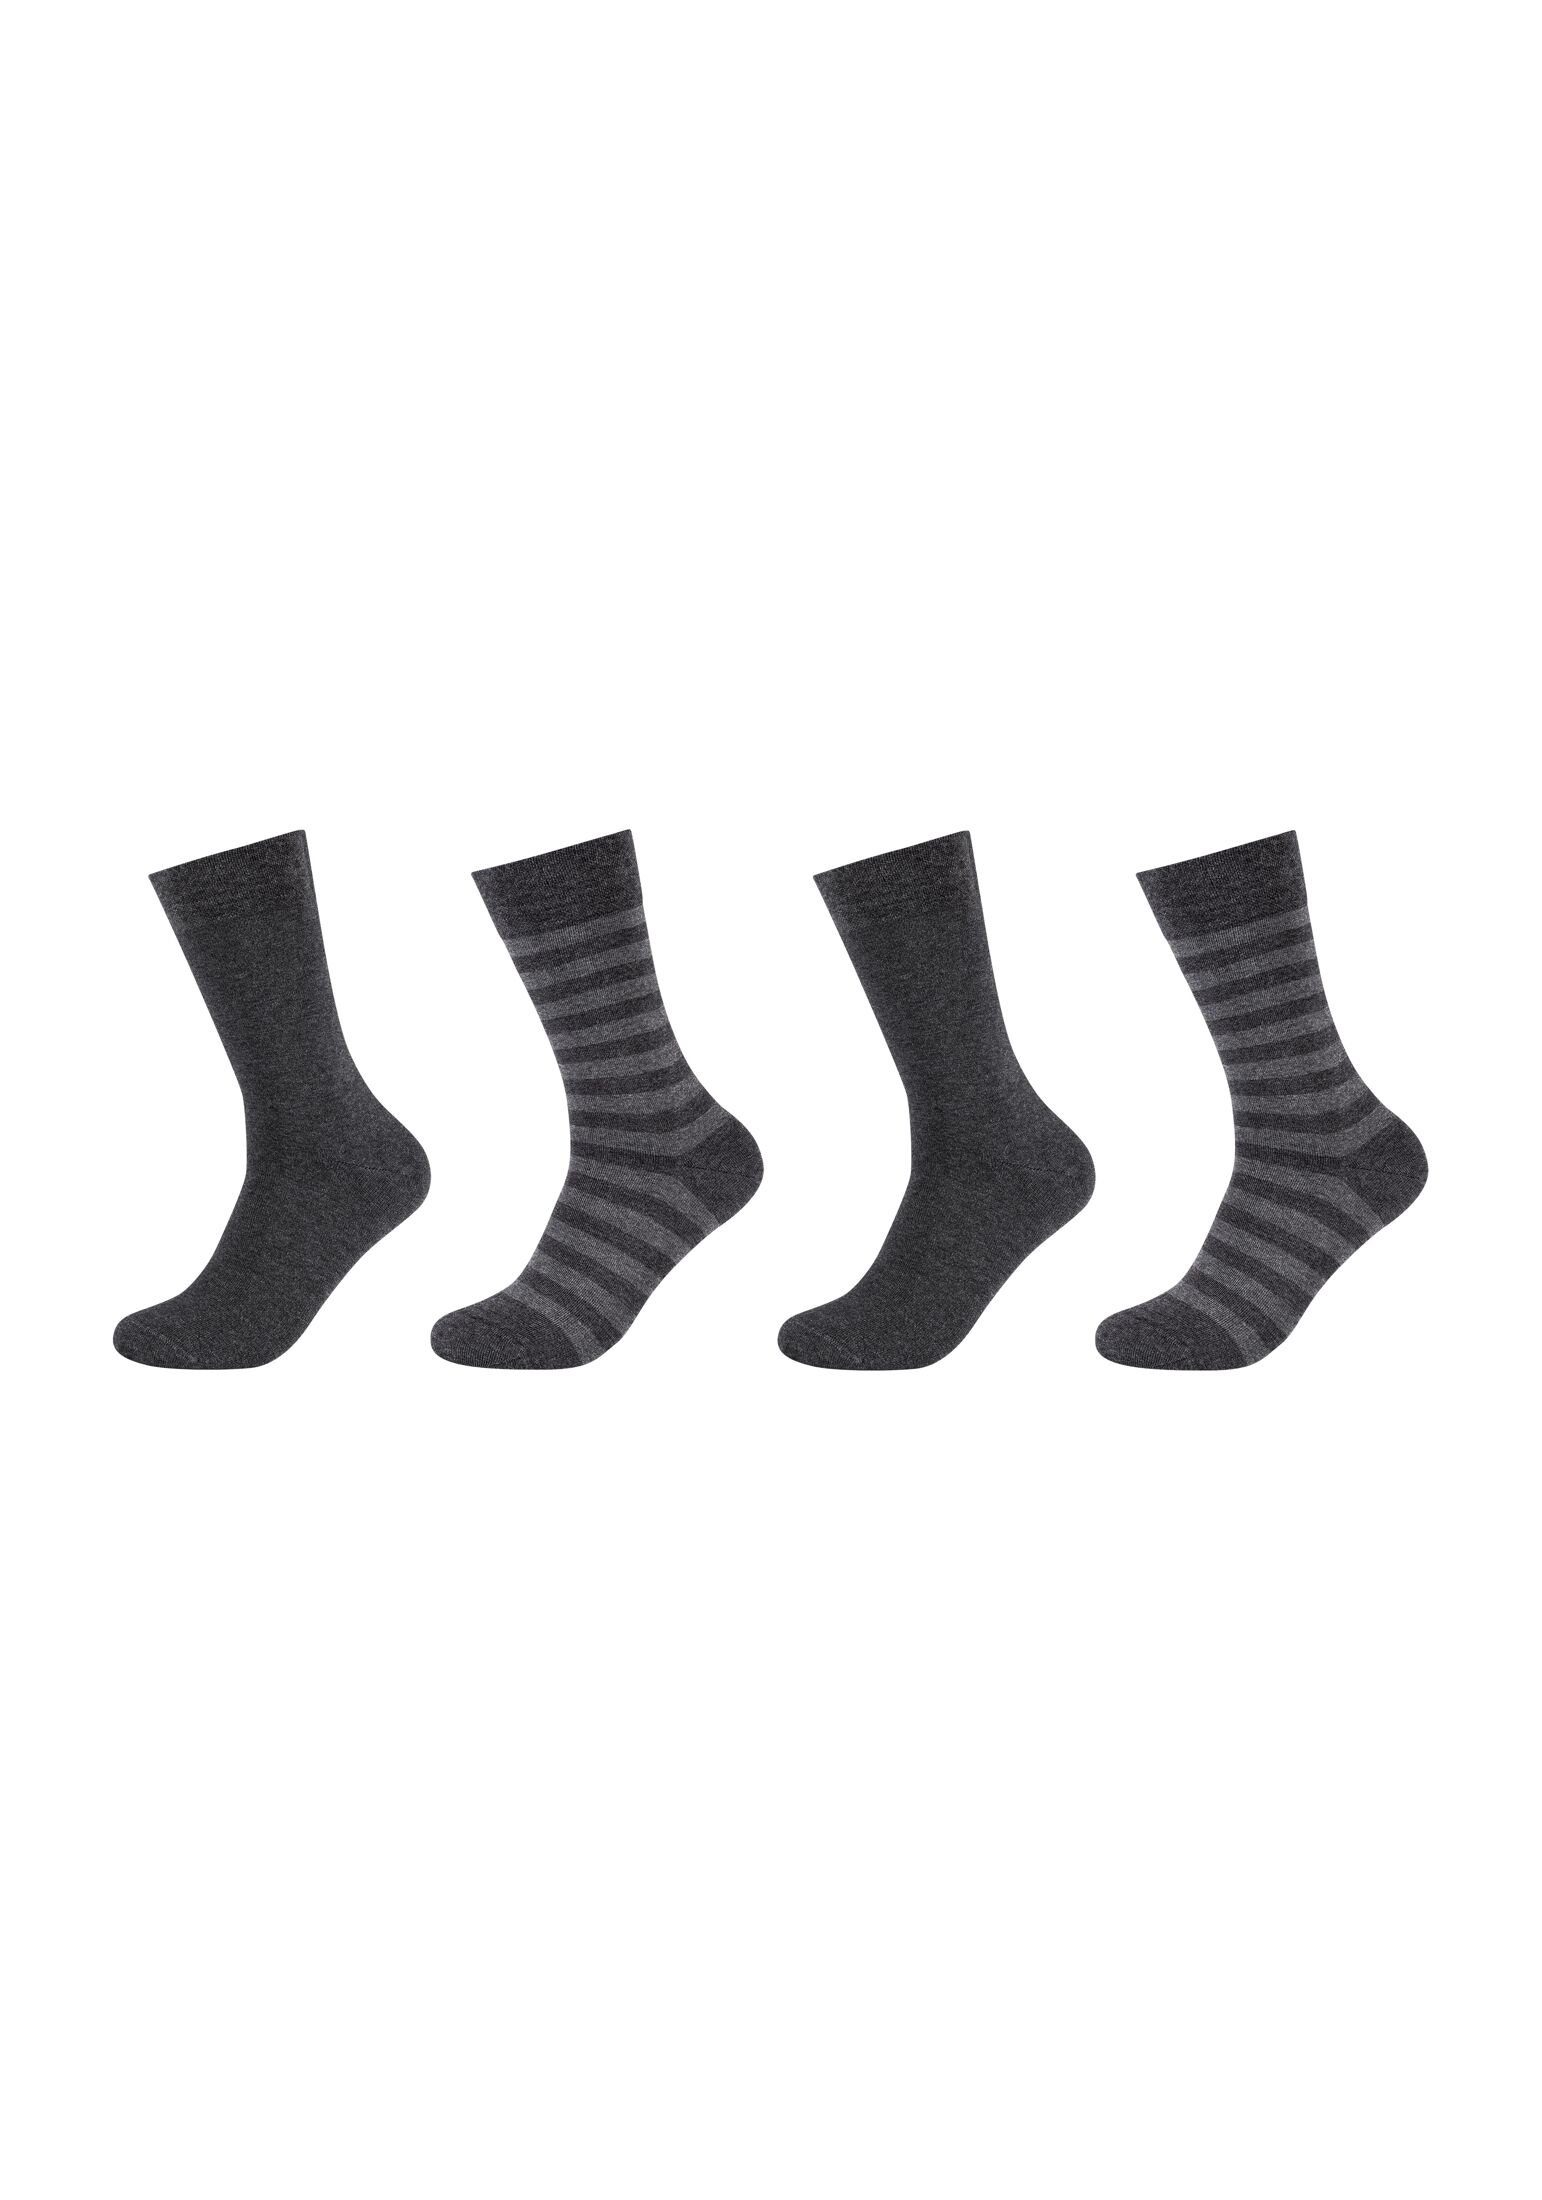 Camano Socken Socken 4er Pack anthracite melange